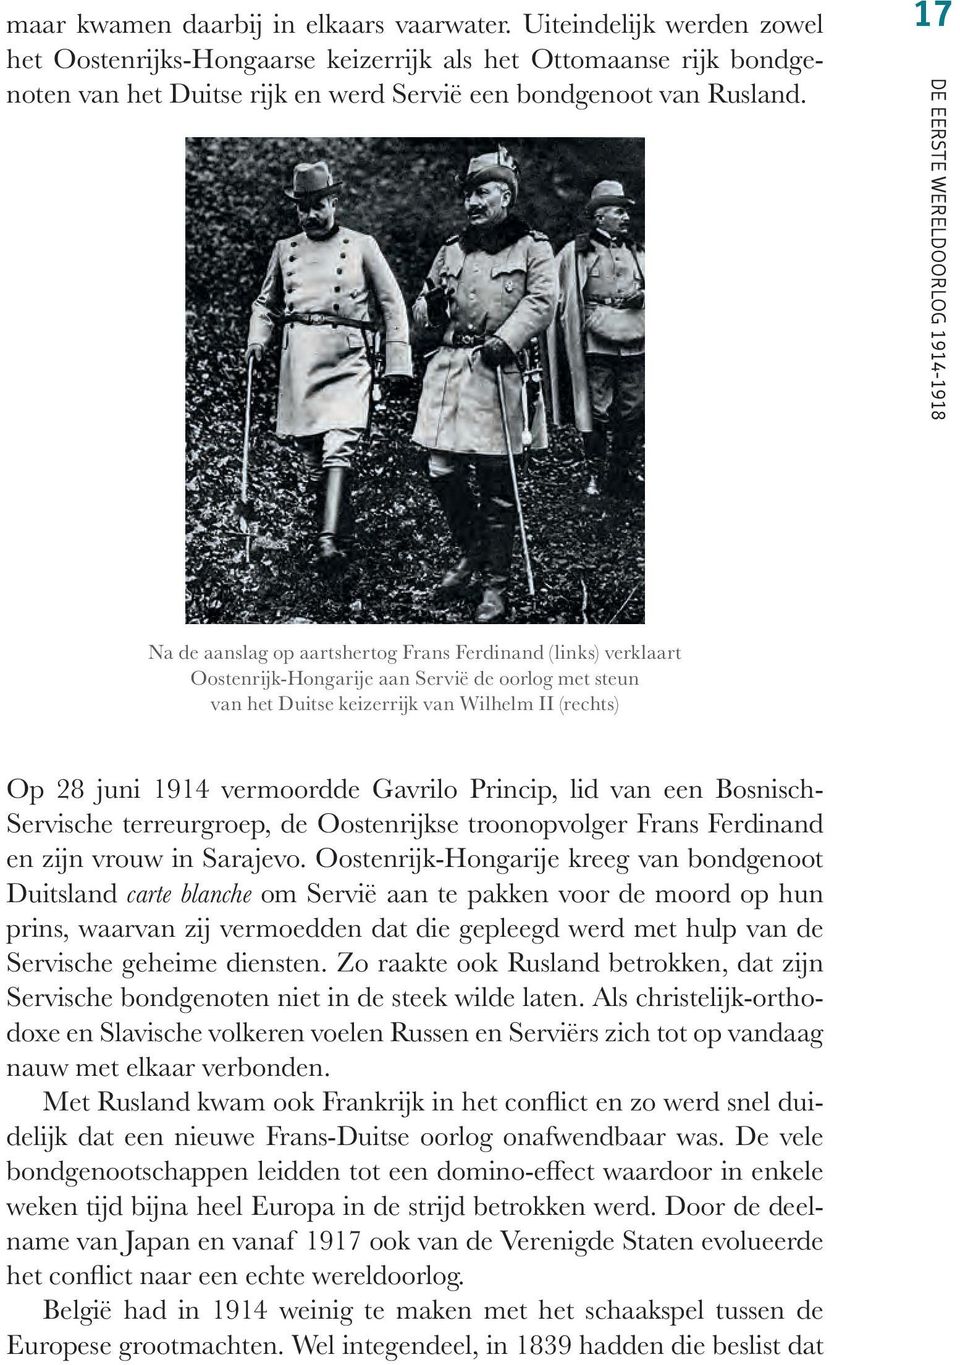 17 DE EERSTE WERELDOORLOG 1914-1918 Na de aanslag op aartshertog Frans Ferdinand (links) verklaart Oostenrijk-Hongarije aan Servië de oorlog met steun van het Duitse keizerrijk van Wilhelm II